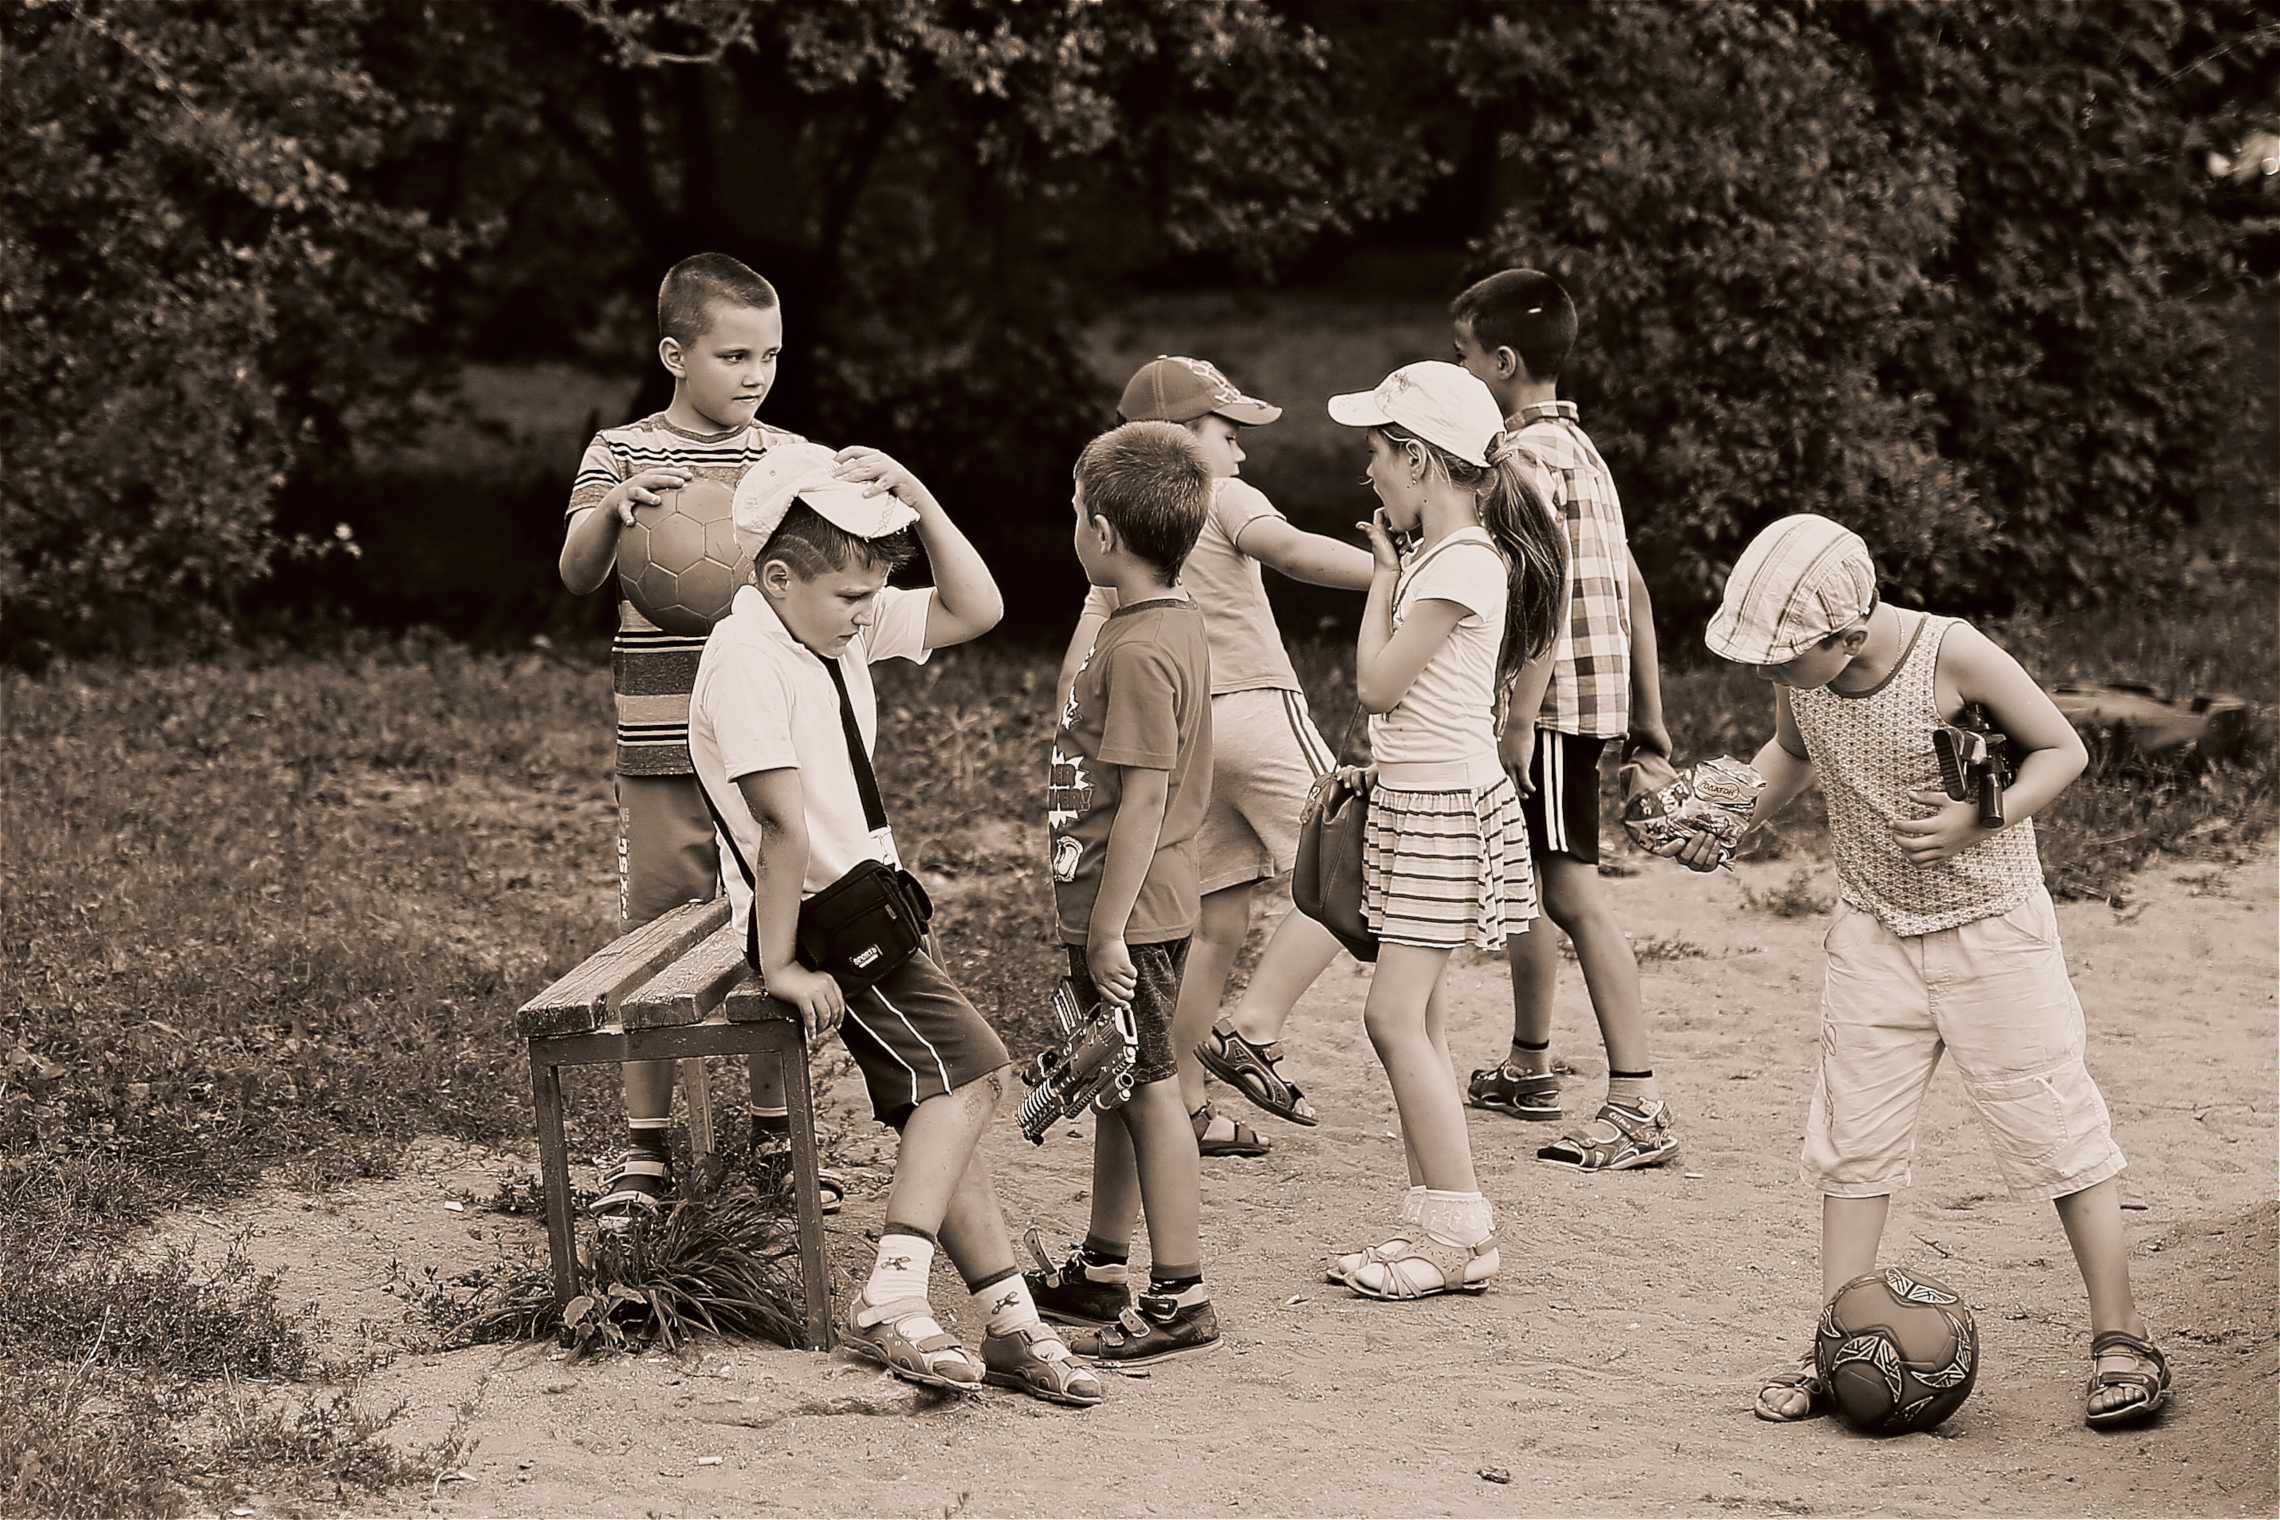 Б детвора. Советское детство. Дети во дворе. Дети играющие во дворе. Дети улицы.